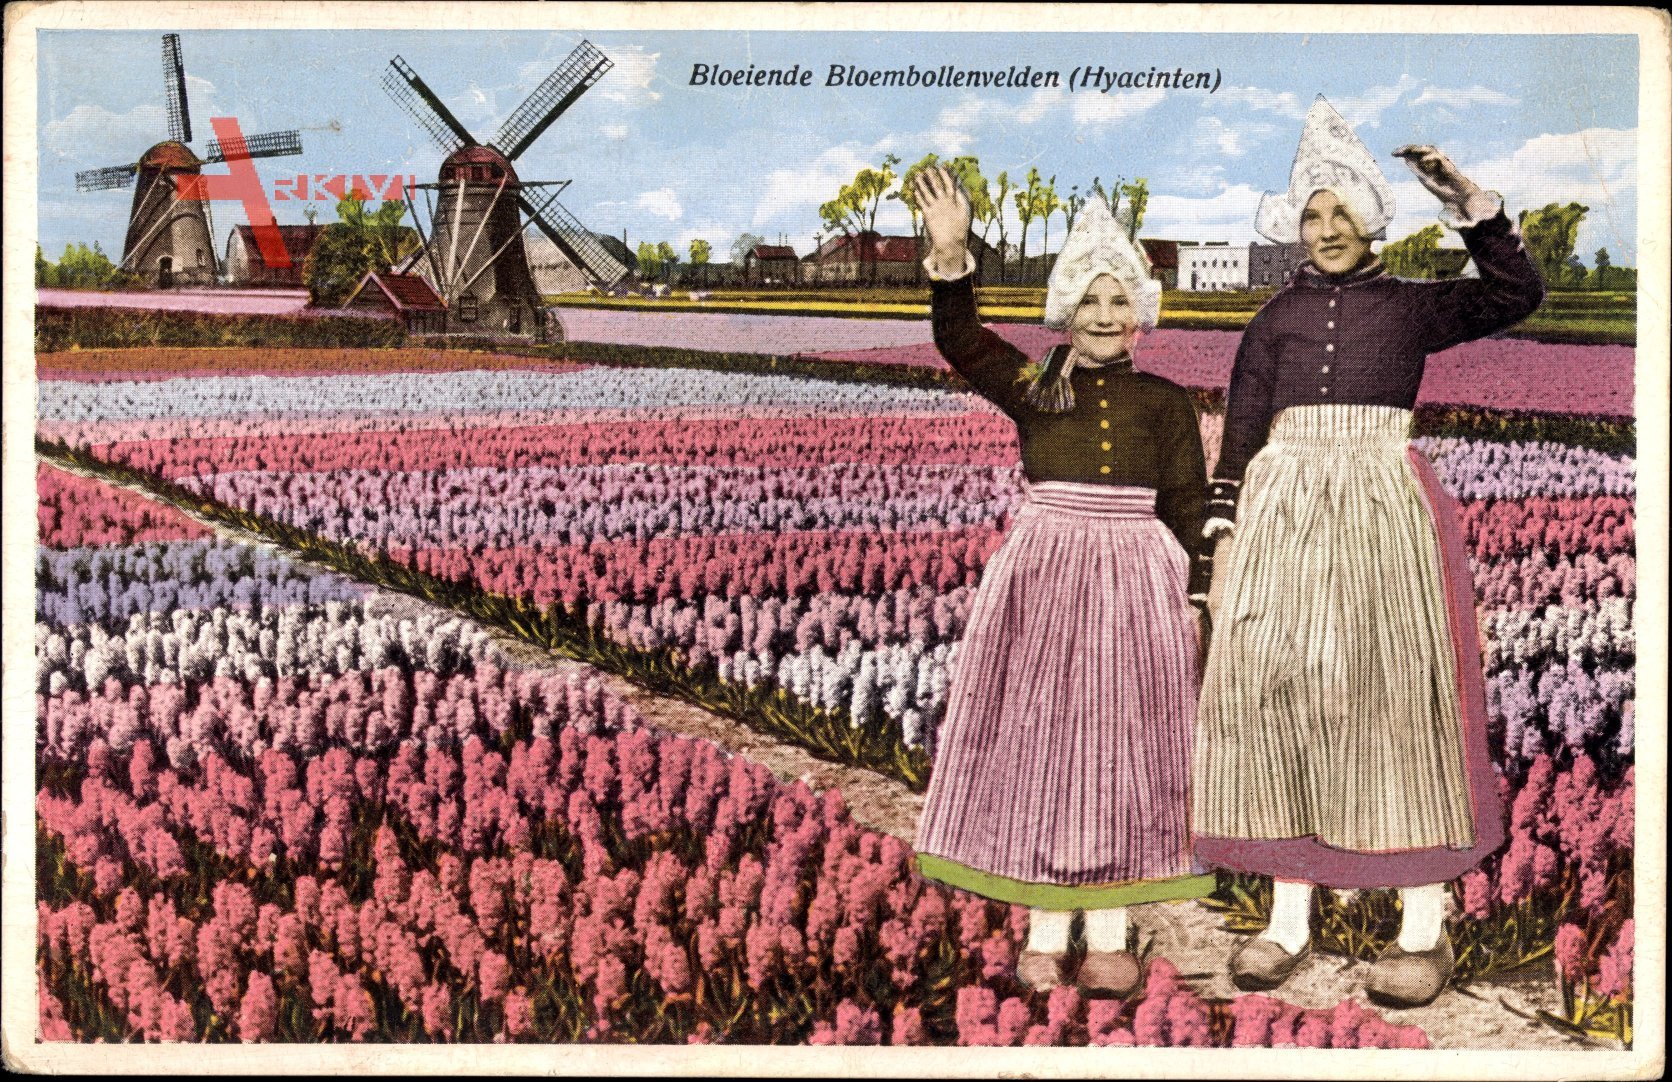 Niederlande, Bloeiende Bloembollenvelden, Hyacinthen, Blumenfeld, Windmühlen